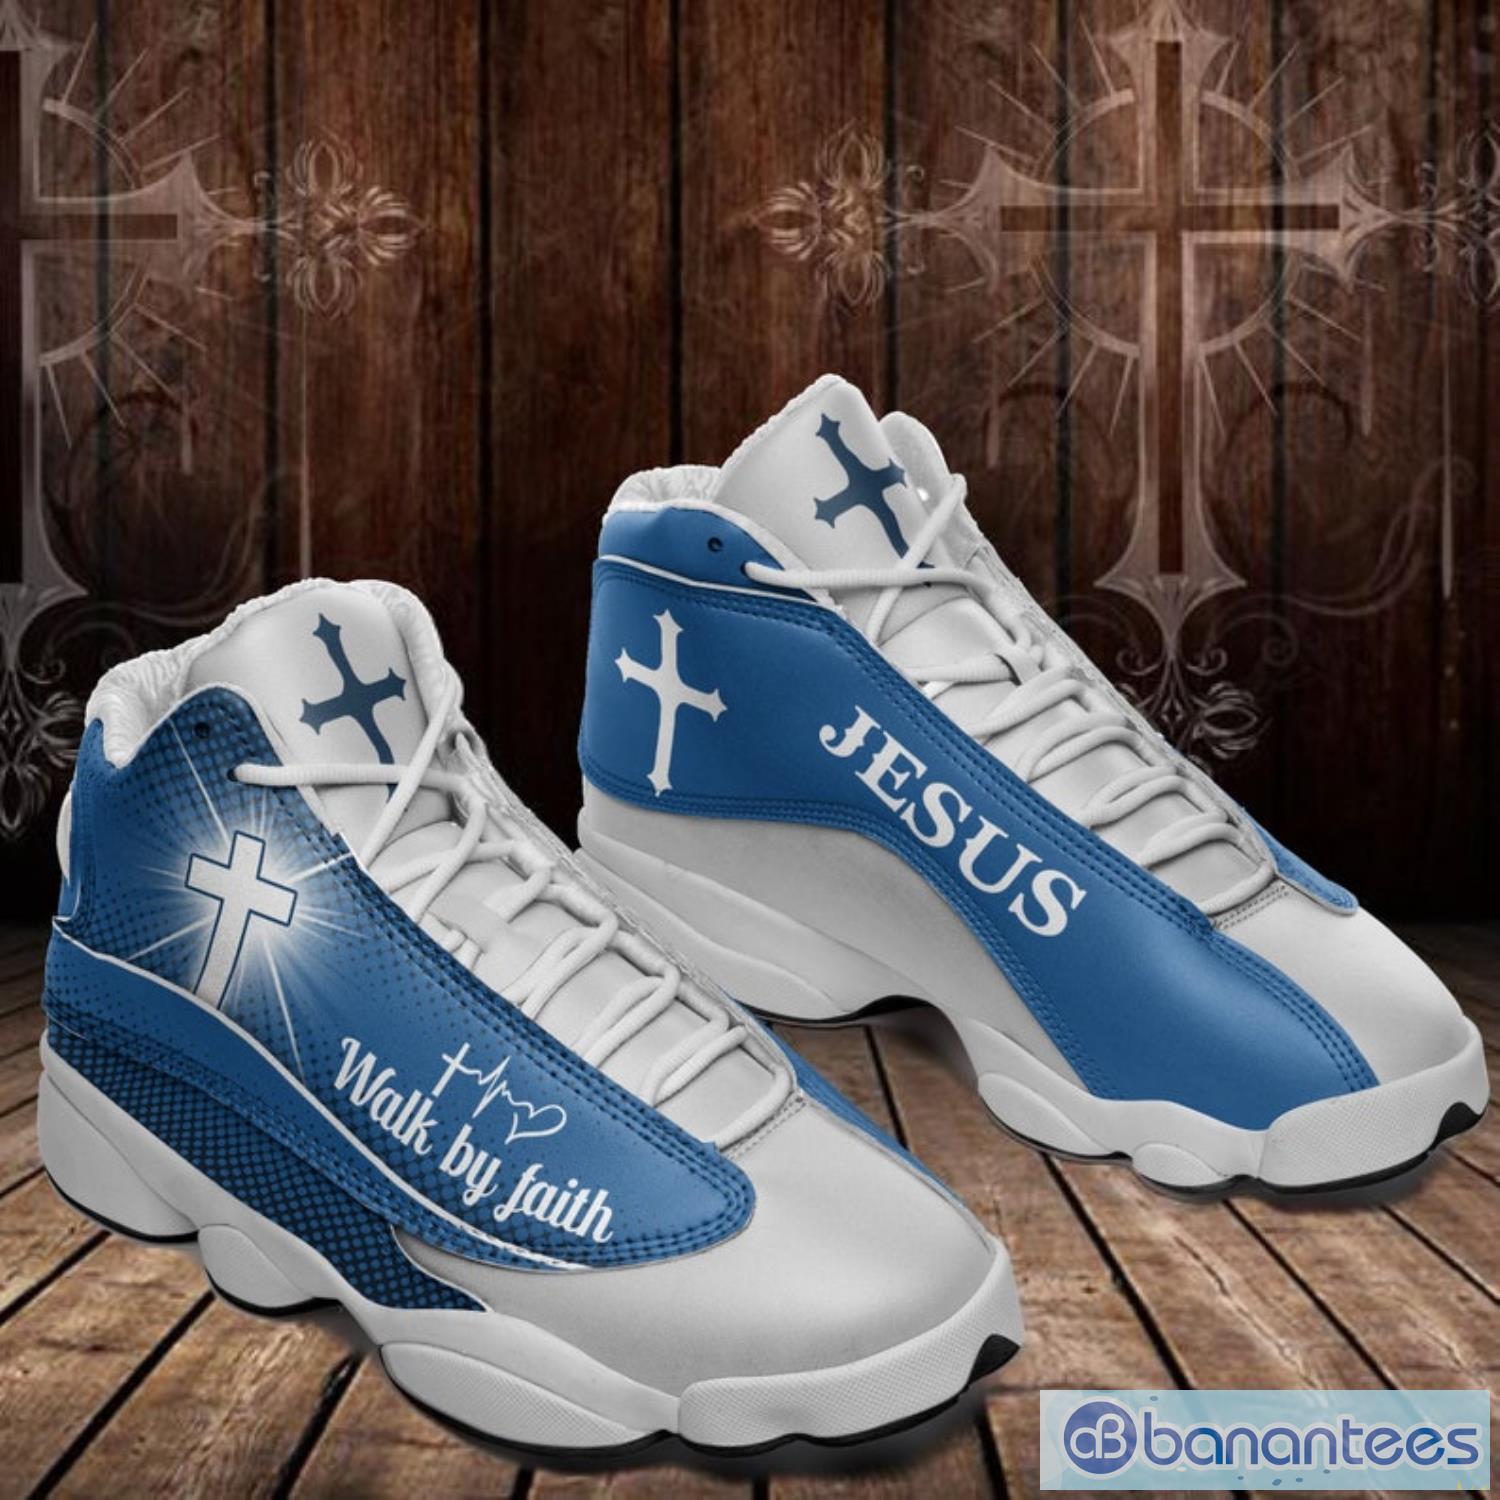 Walk By Faith Not By Sight Sunflower Sneaker Air Jordan 13